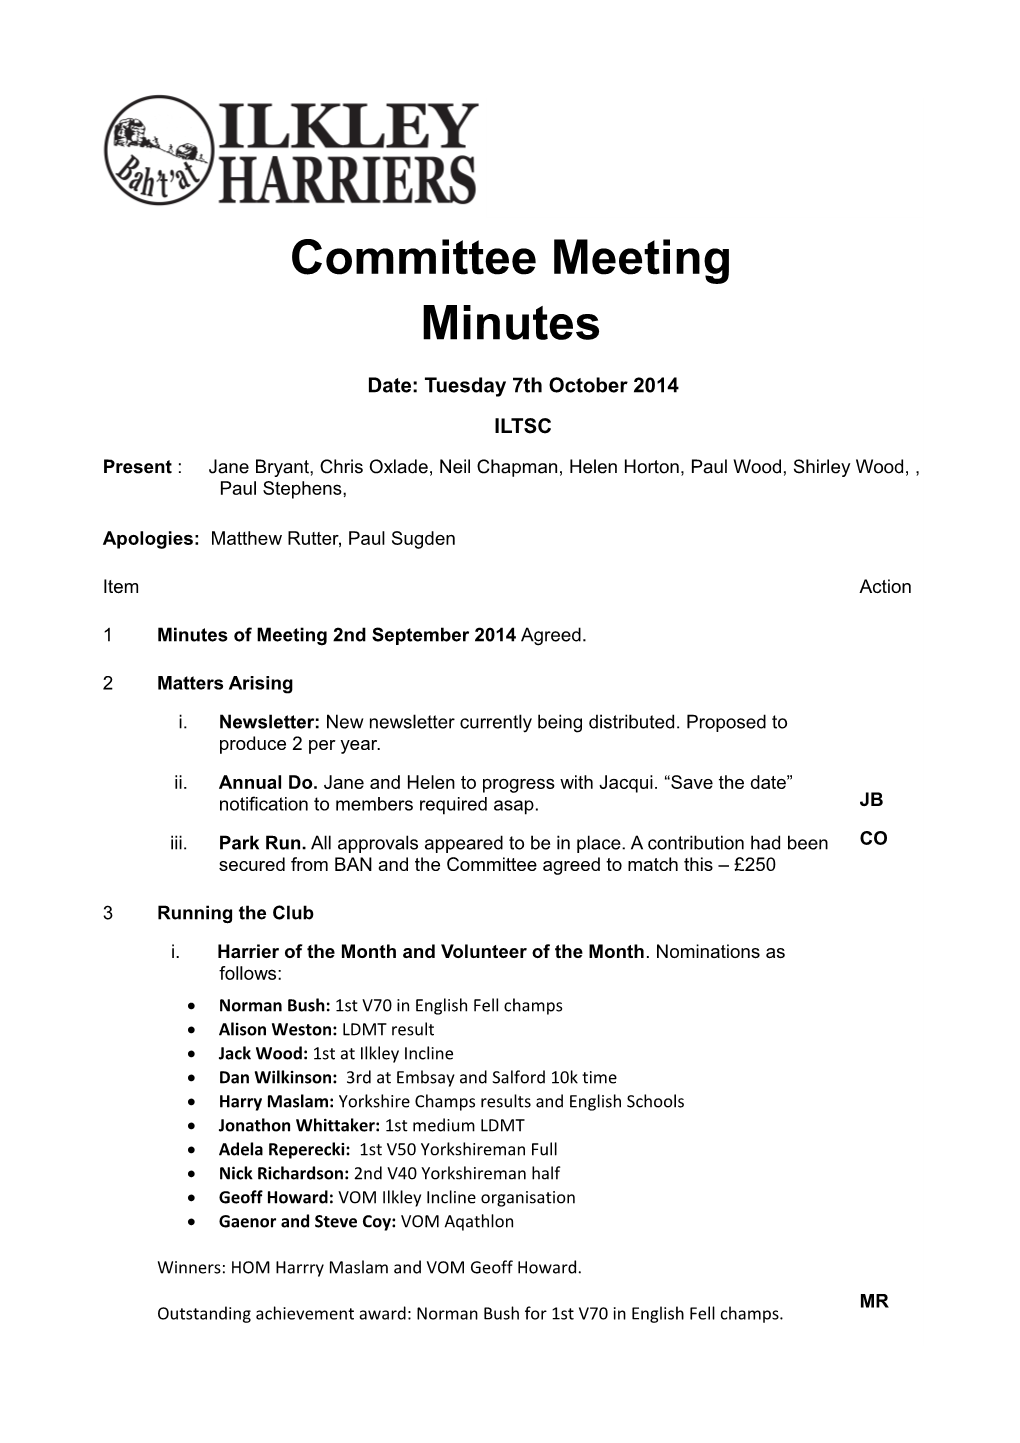 Committee Meeting